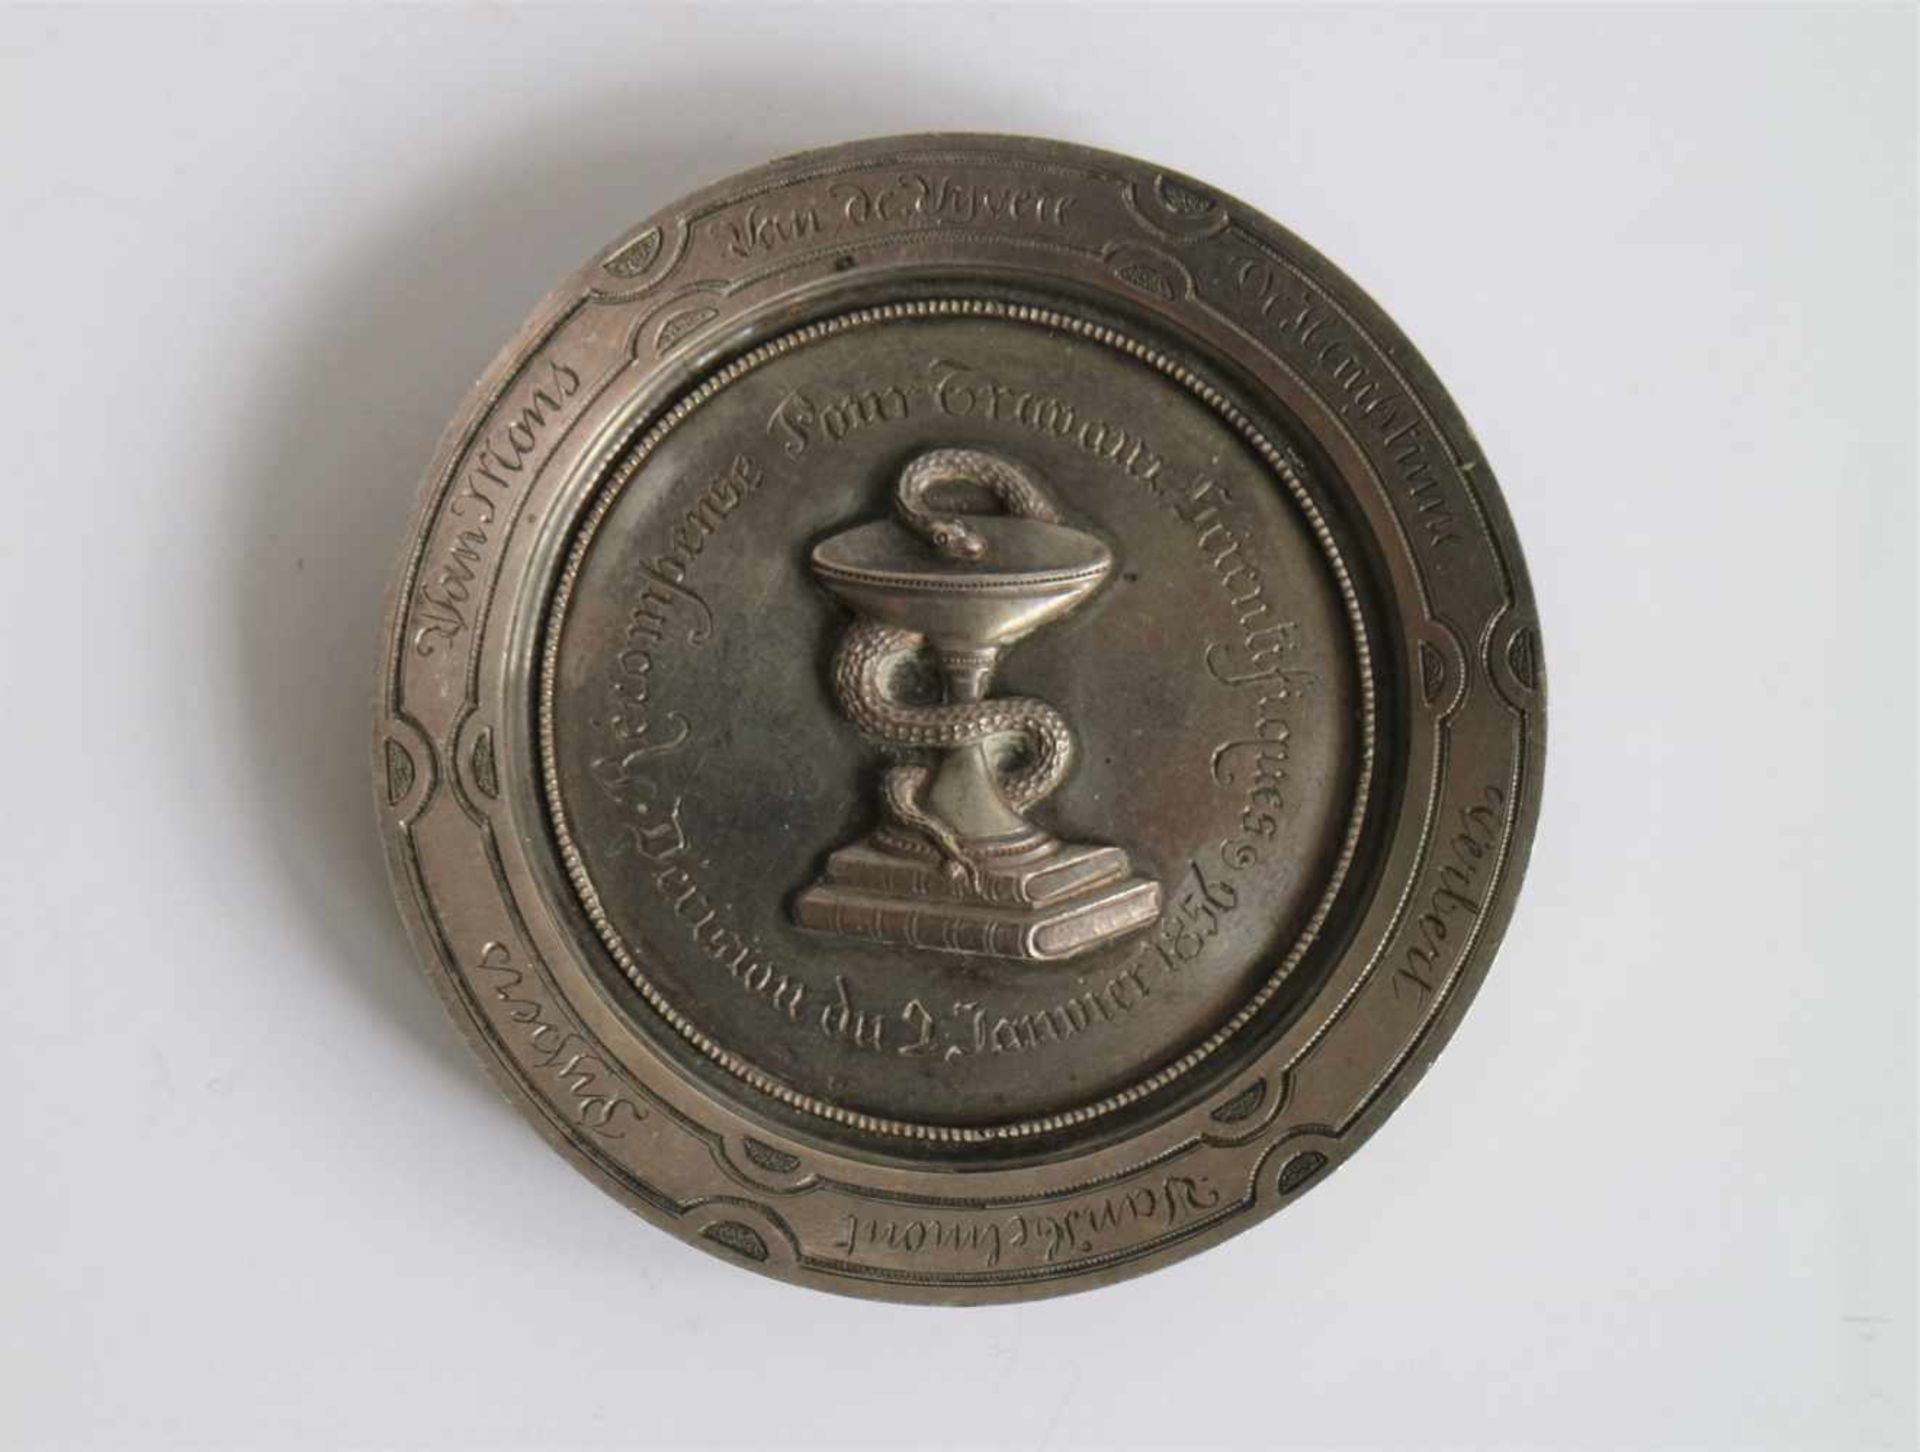 Silver medal Société de pharmacie Antwerp 1858, unique edition dia 6,5 cm